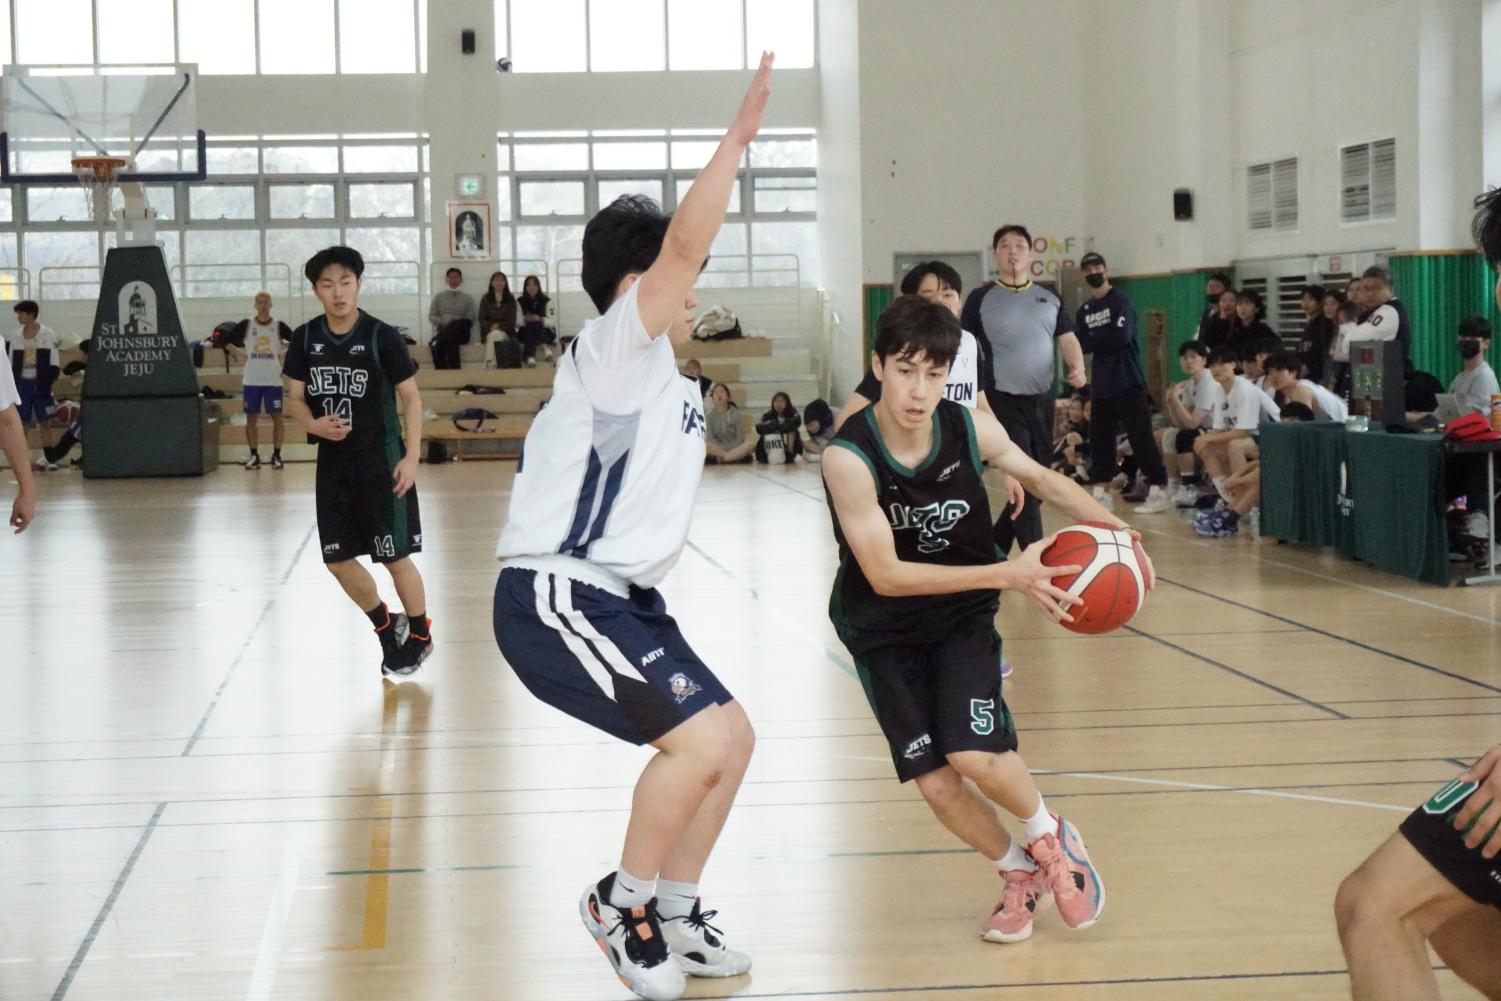 Dylan Wang Injured when finals games Basketball Super 3 